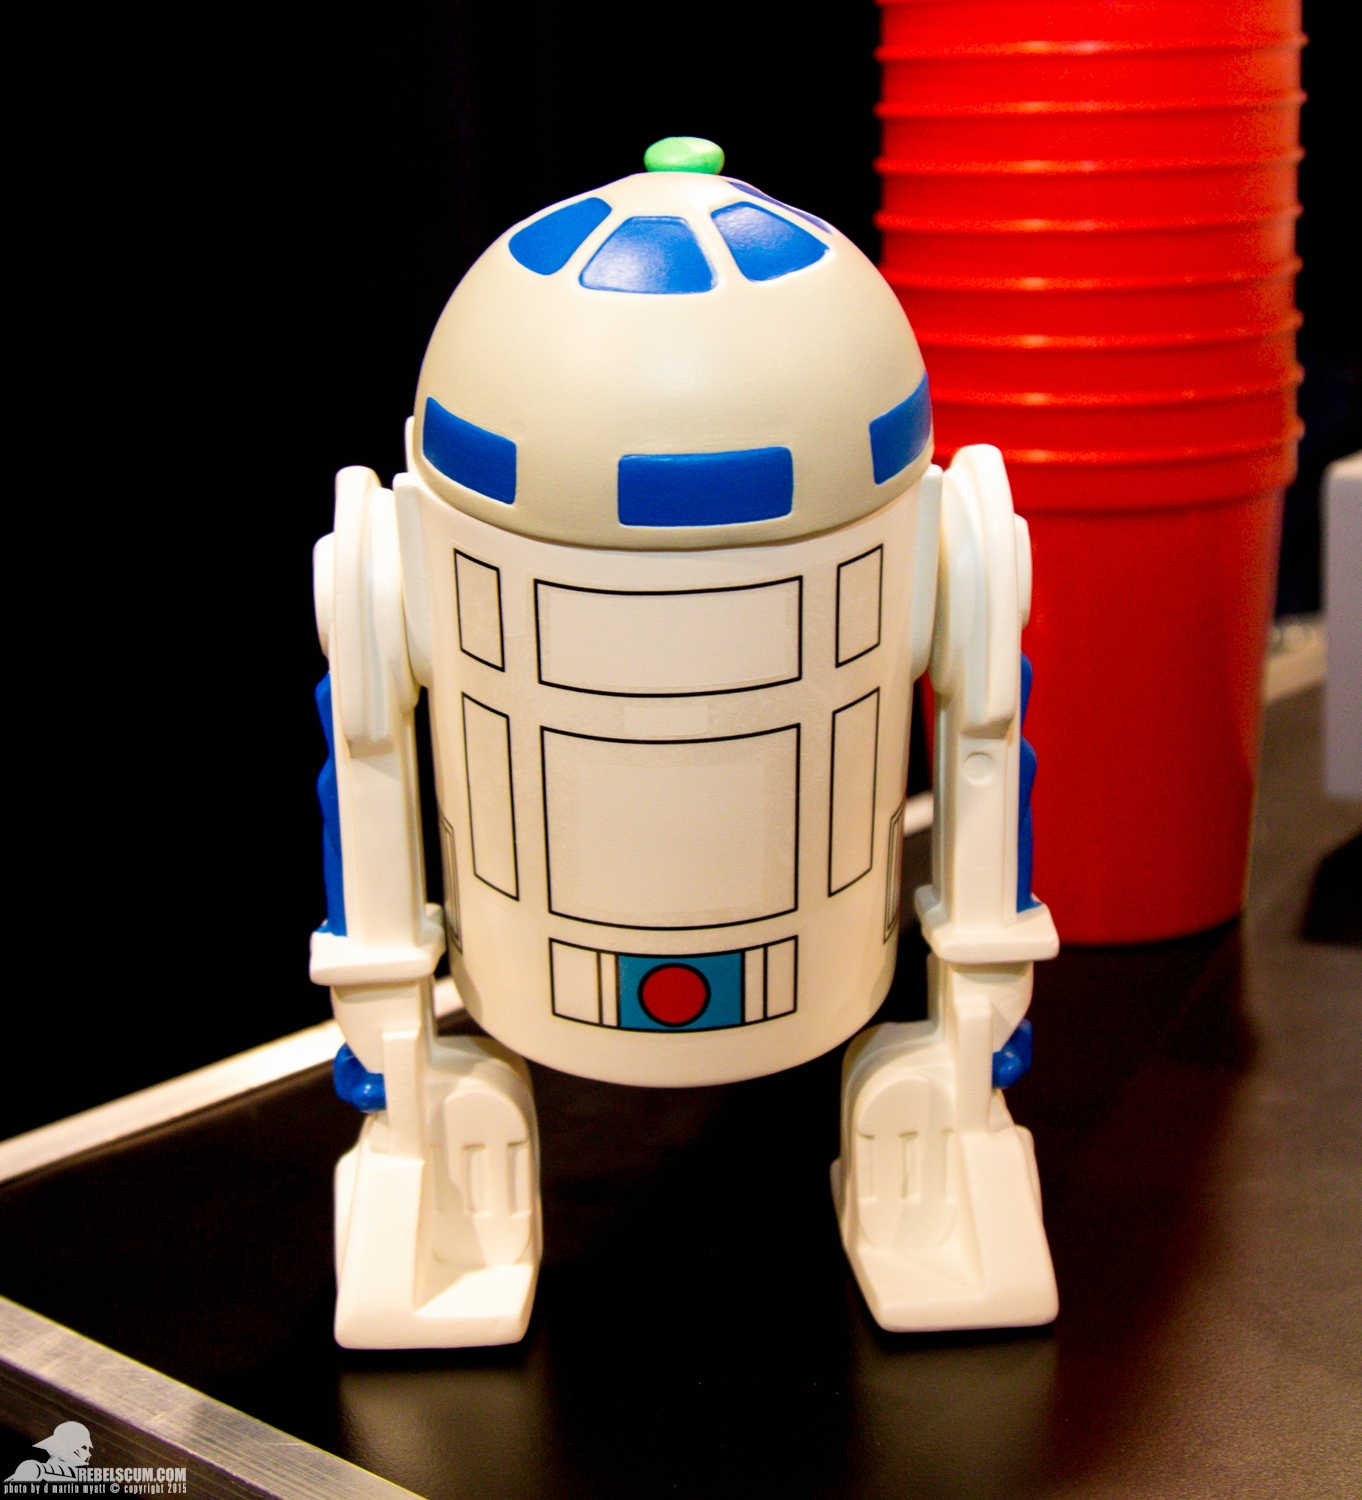 Star-Wars-Celebration-Anaheim-2015-Gentle-Giant-Droids-R2-D2-003.jpg